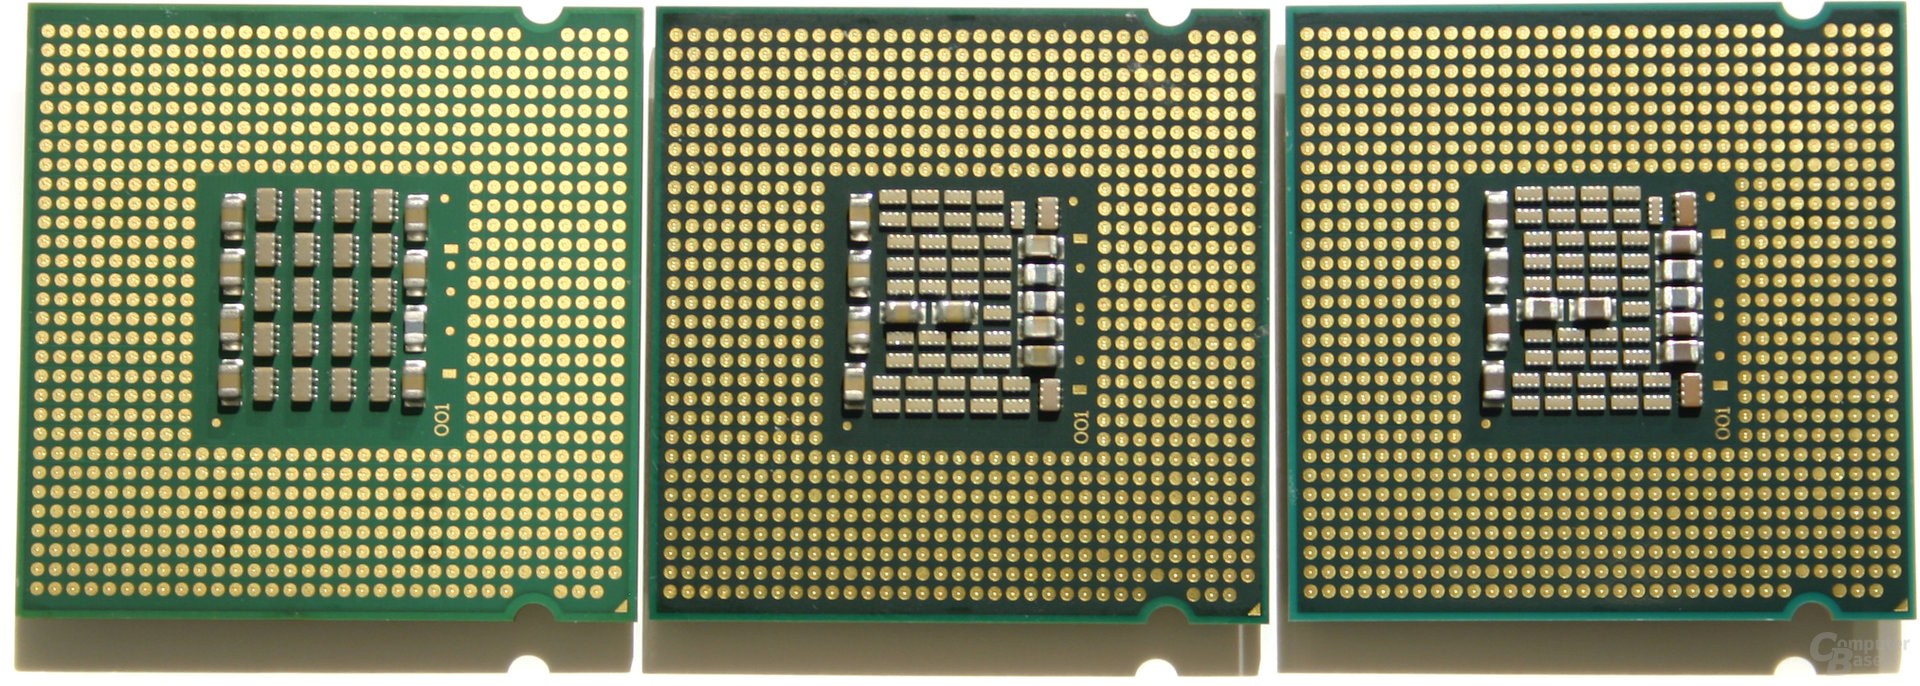 v.l.n.r: Pentium XE 840, Pentium XE 955, Pentium XE 965